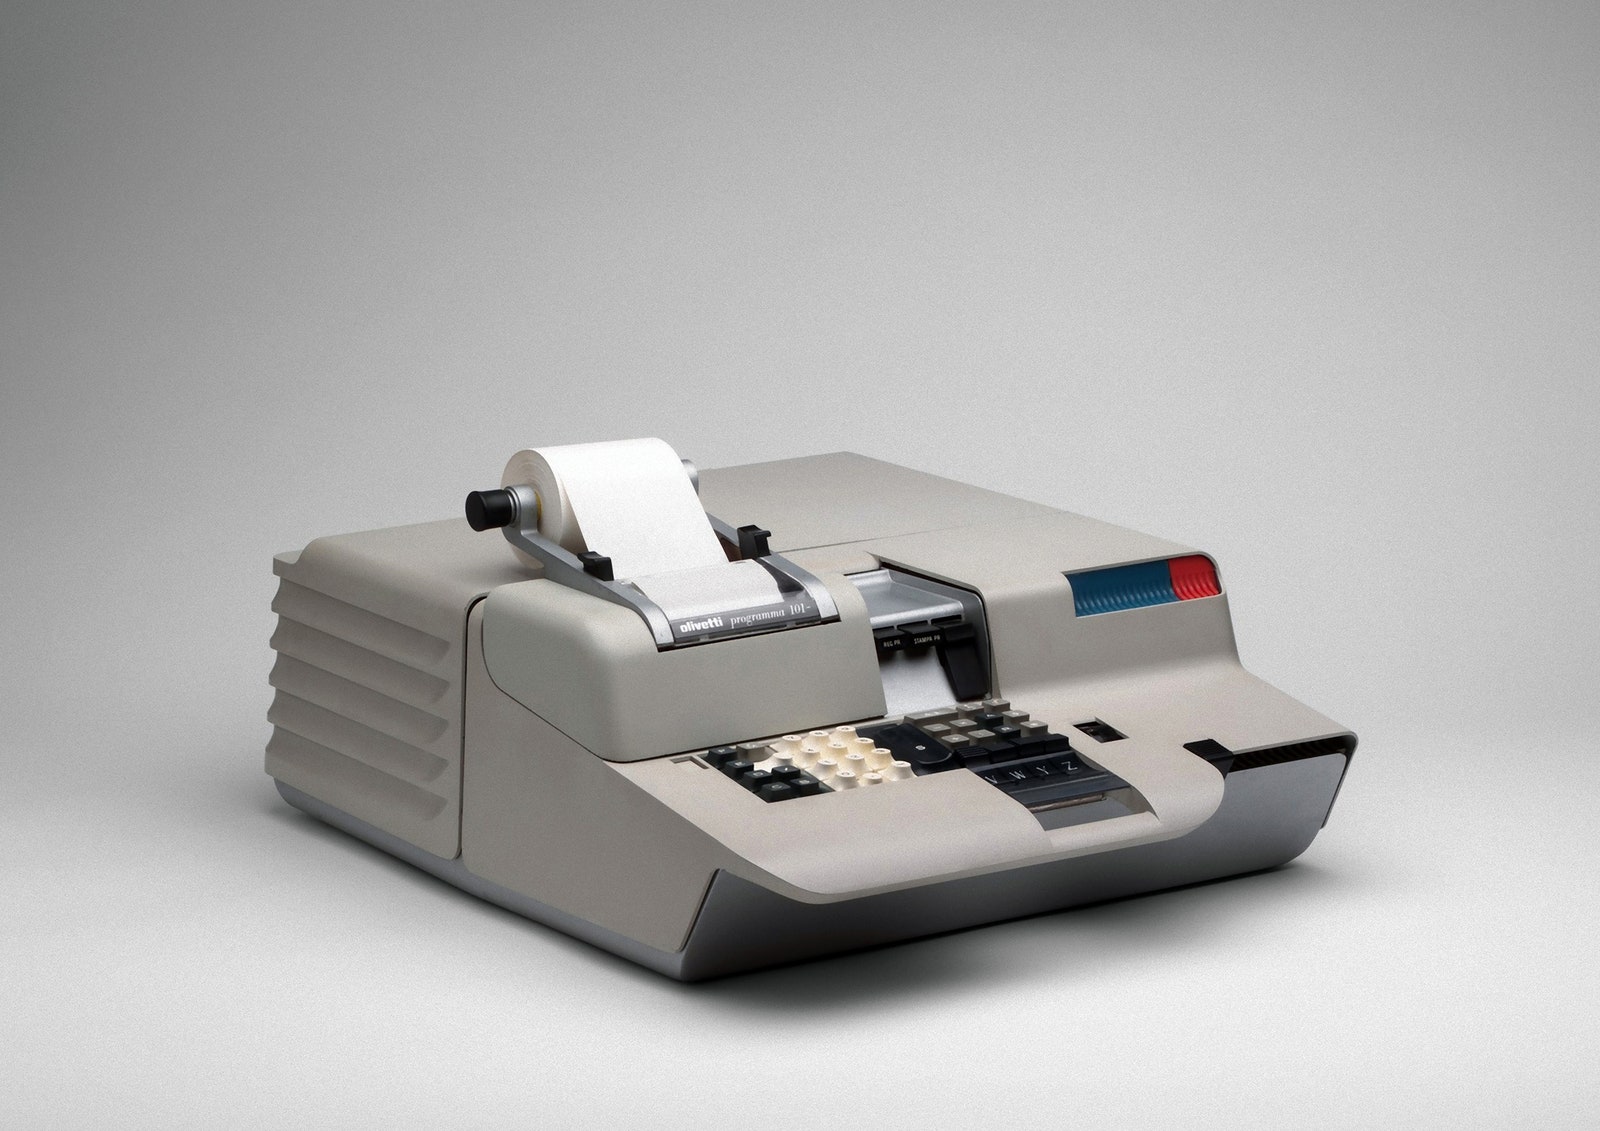 Первый персональный компьютер Programma 101 Olivetti 1965. © MoMA N.Y.